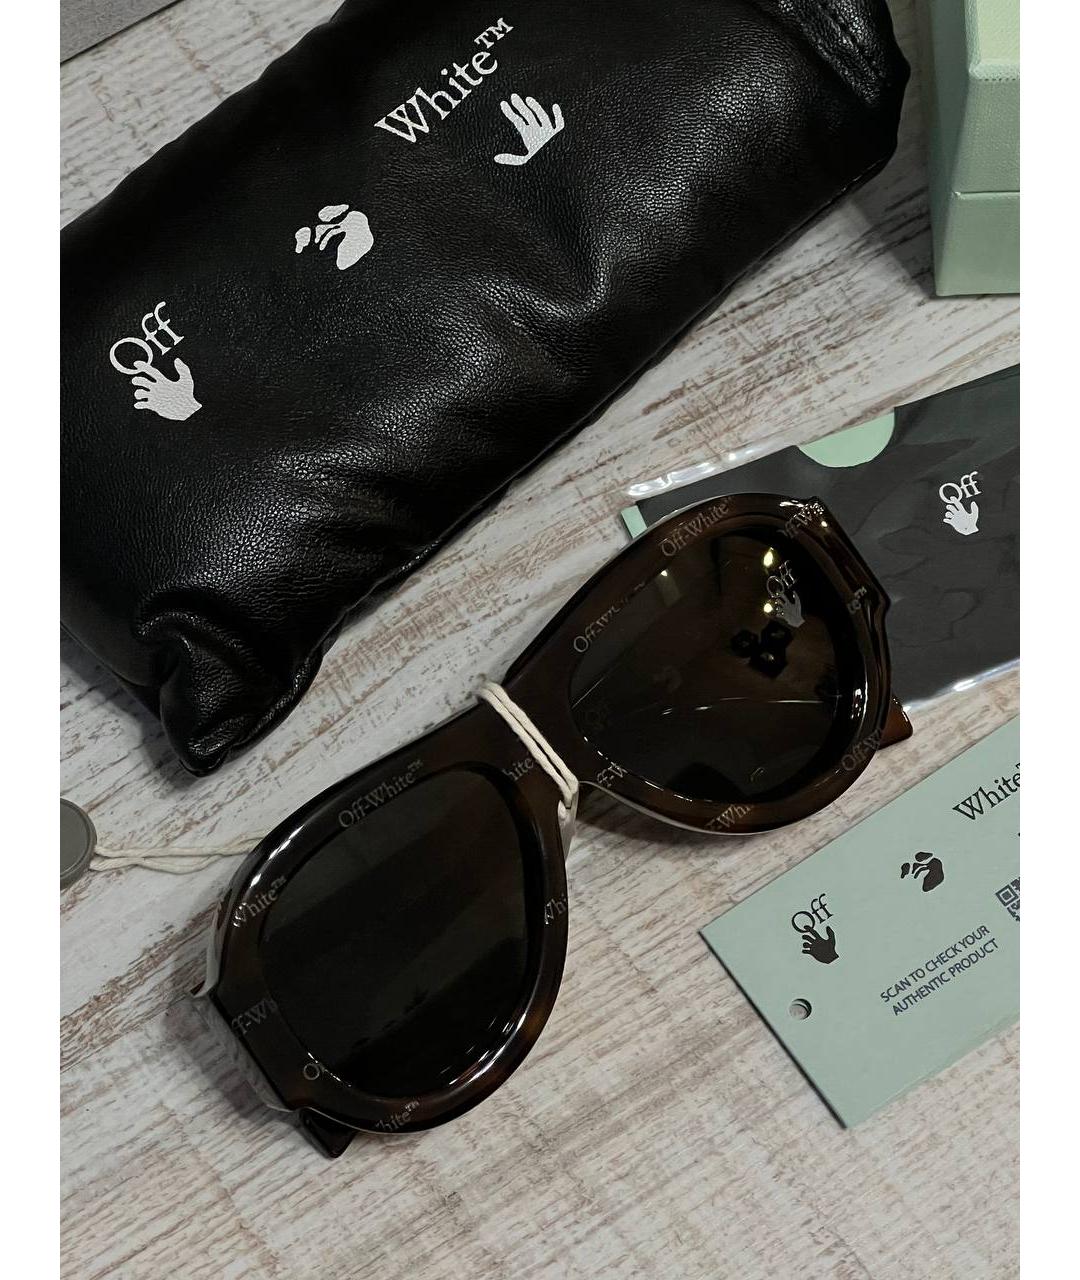 OFF-WHITE Черные солнцезащитные очки, фото 5